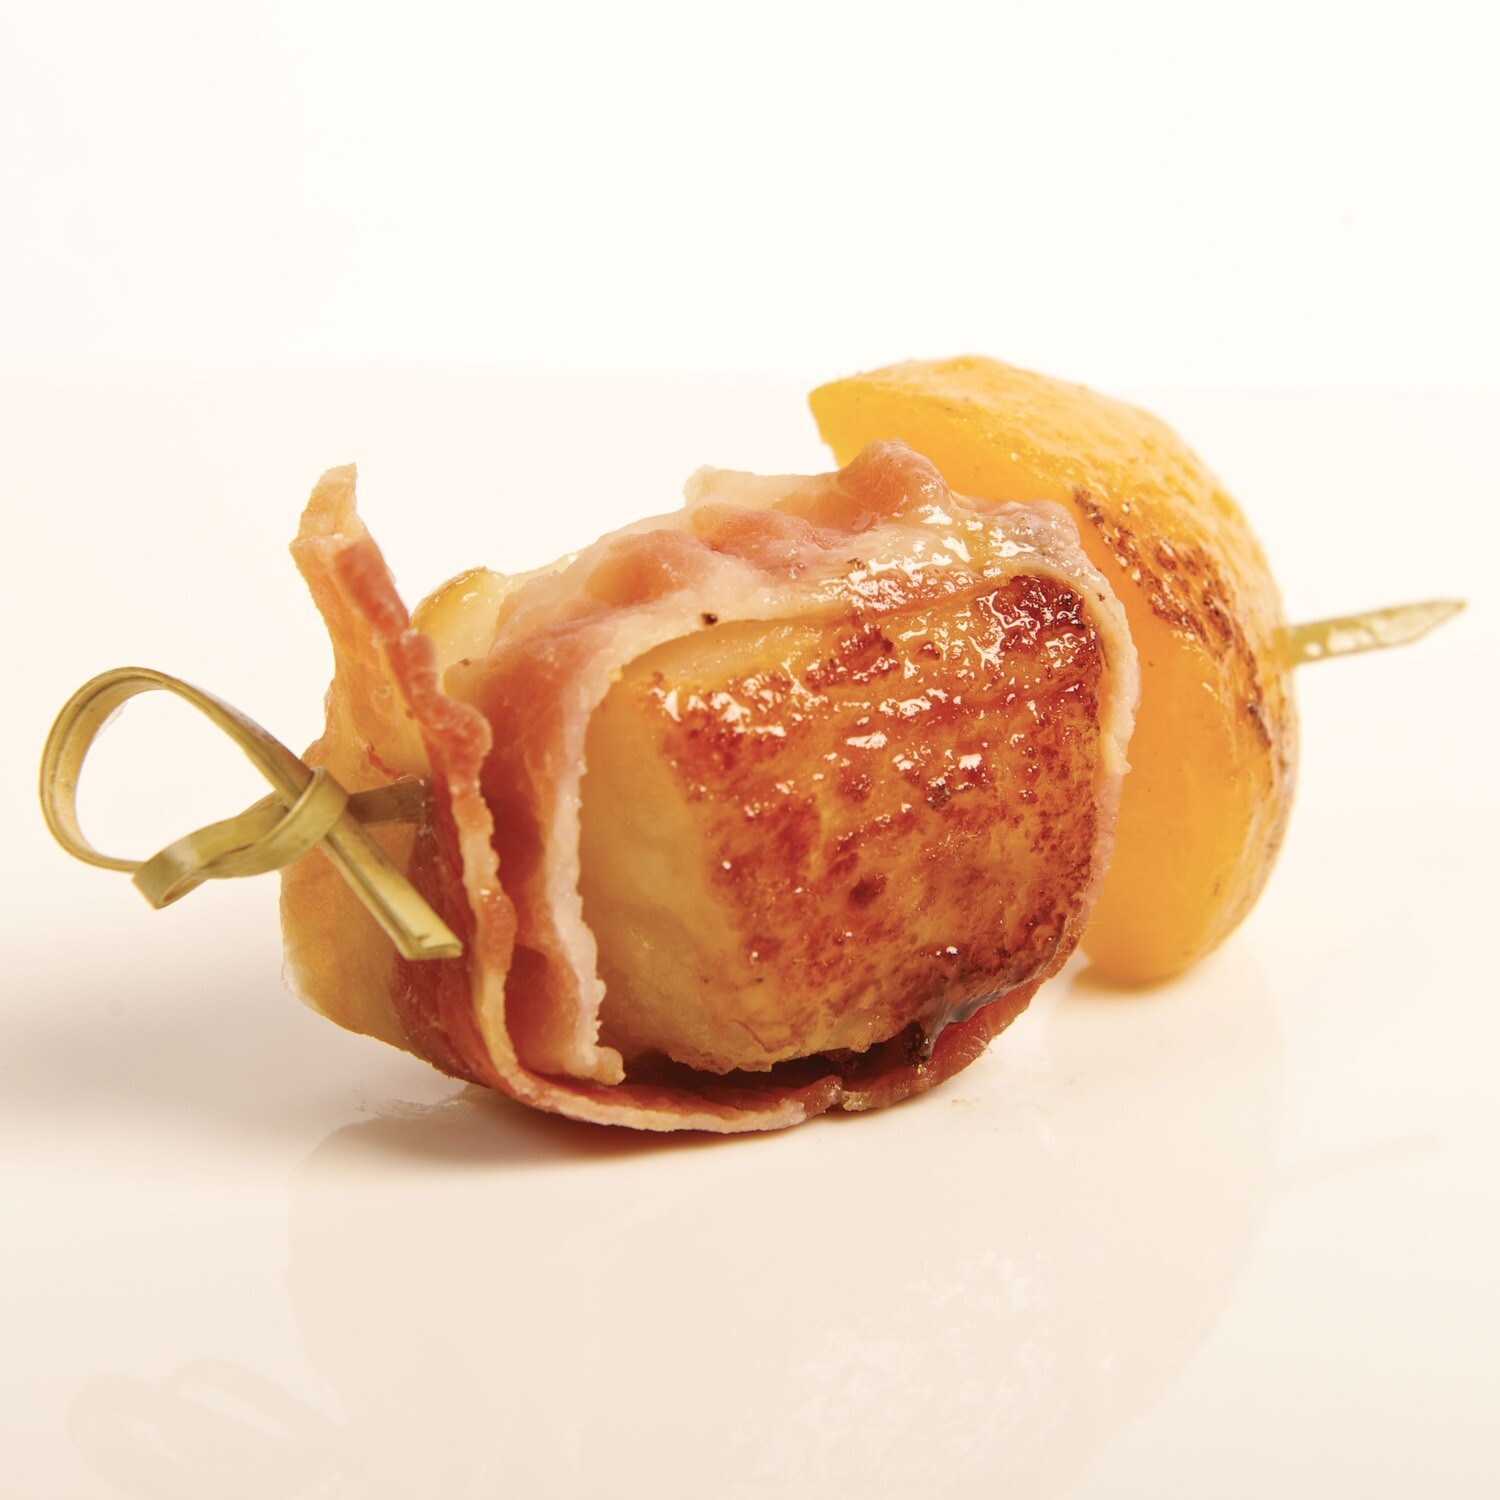 Brochette pétoncle en robe de bacon et abricot